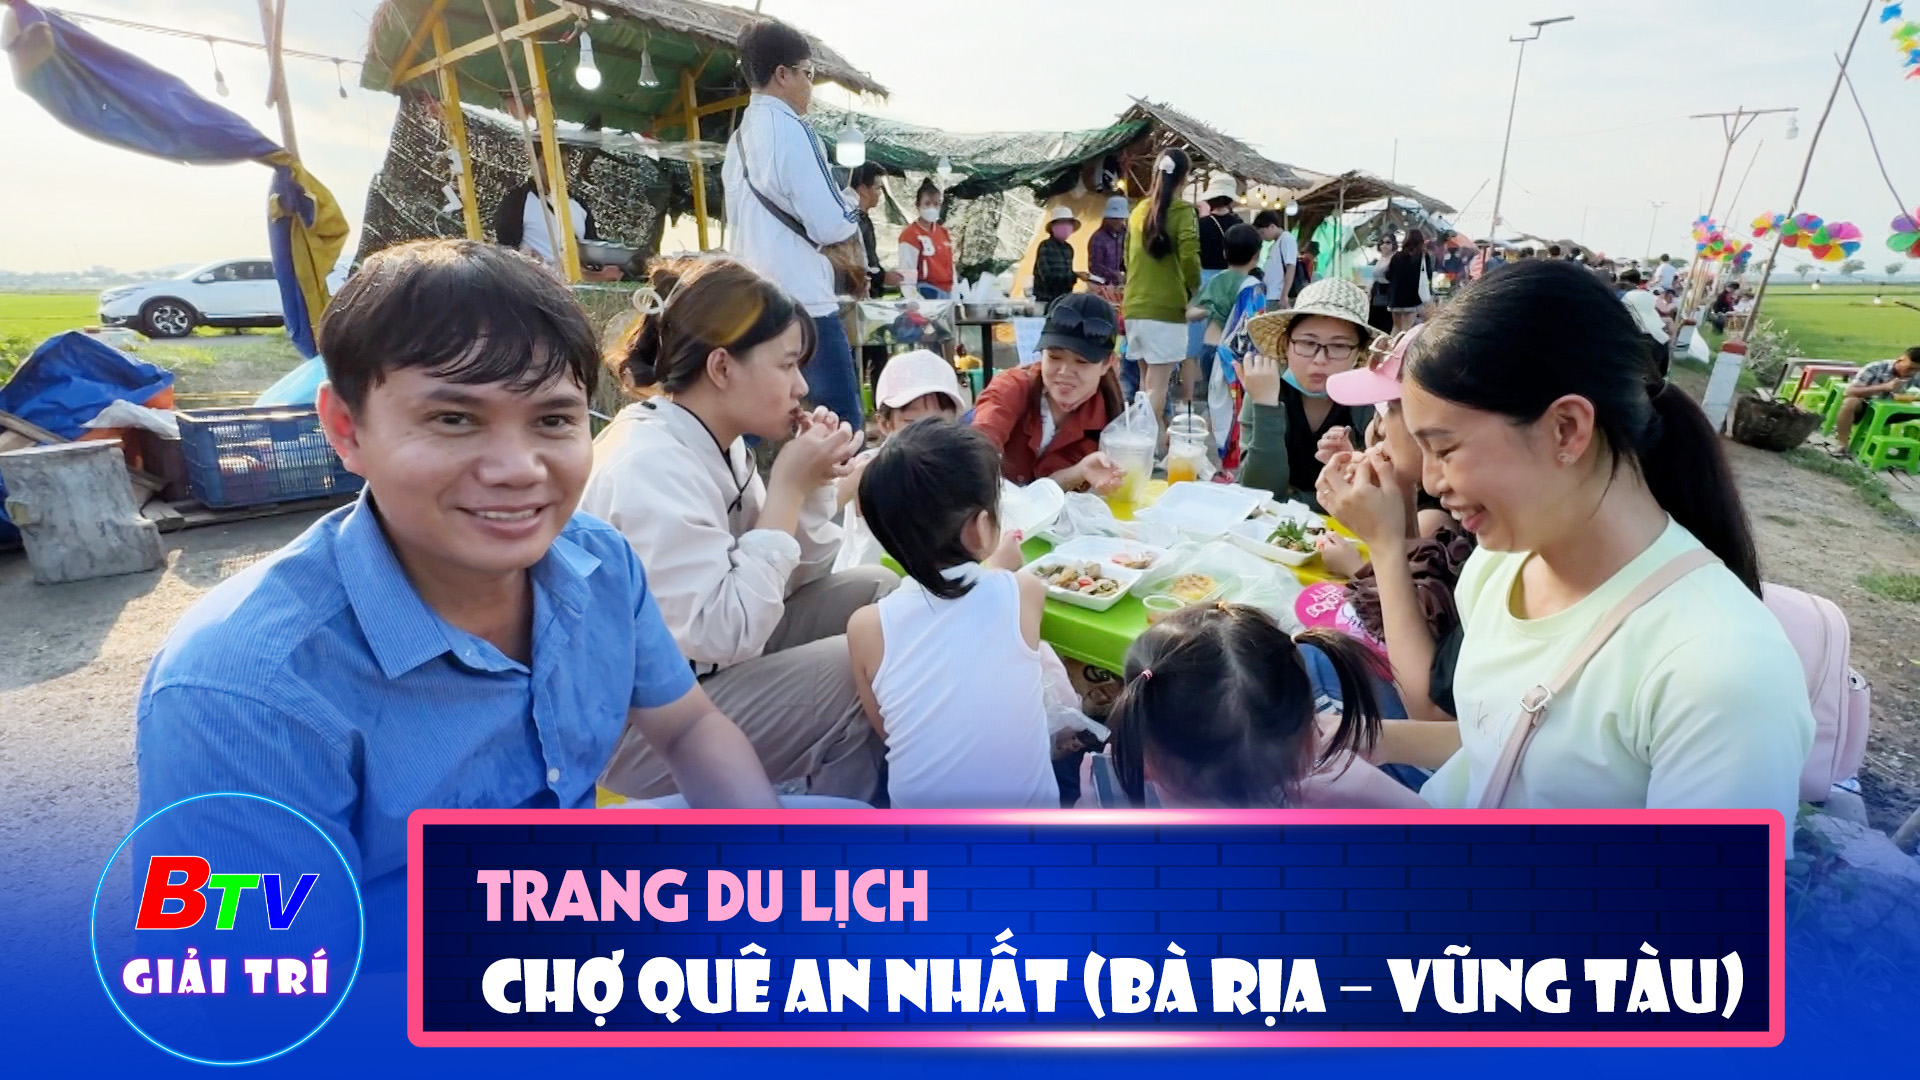 Chợ quê An Nhất (huyện Long Điền, tỉnh Bà Rịa – Vũng Tàu)